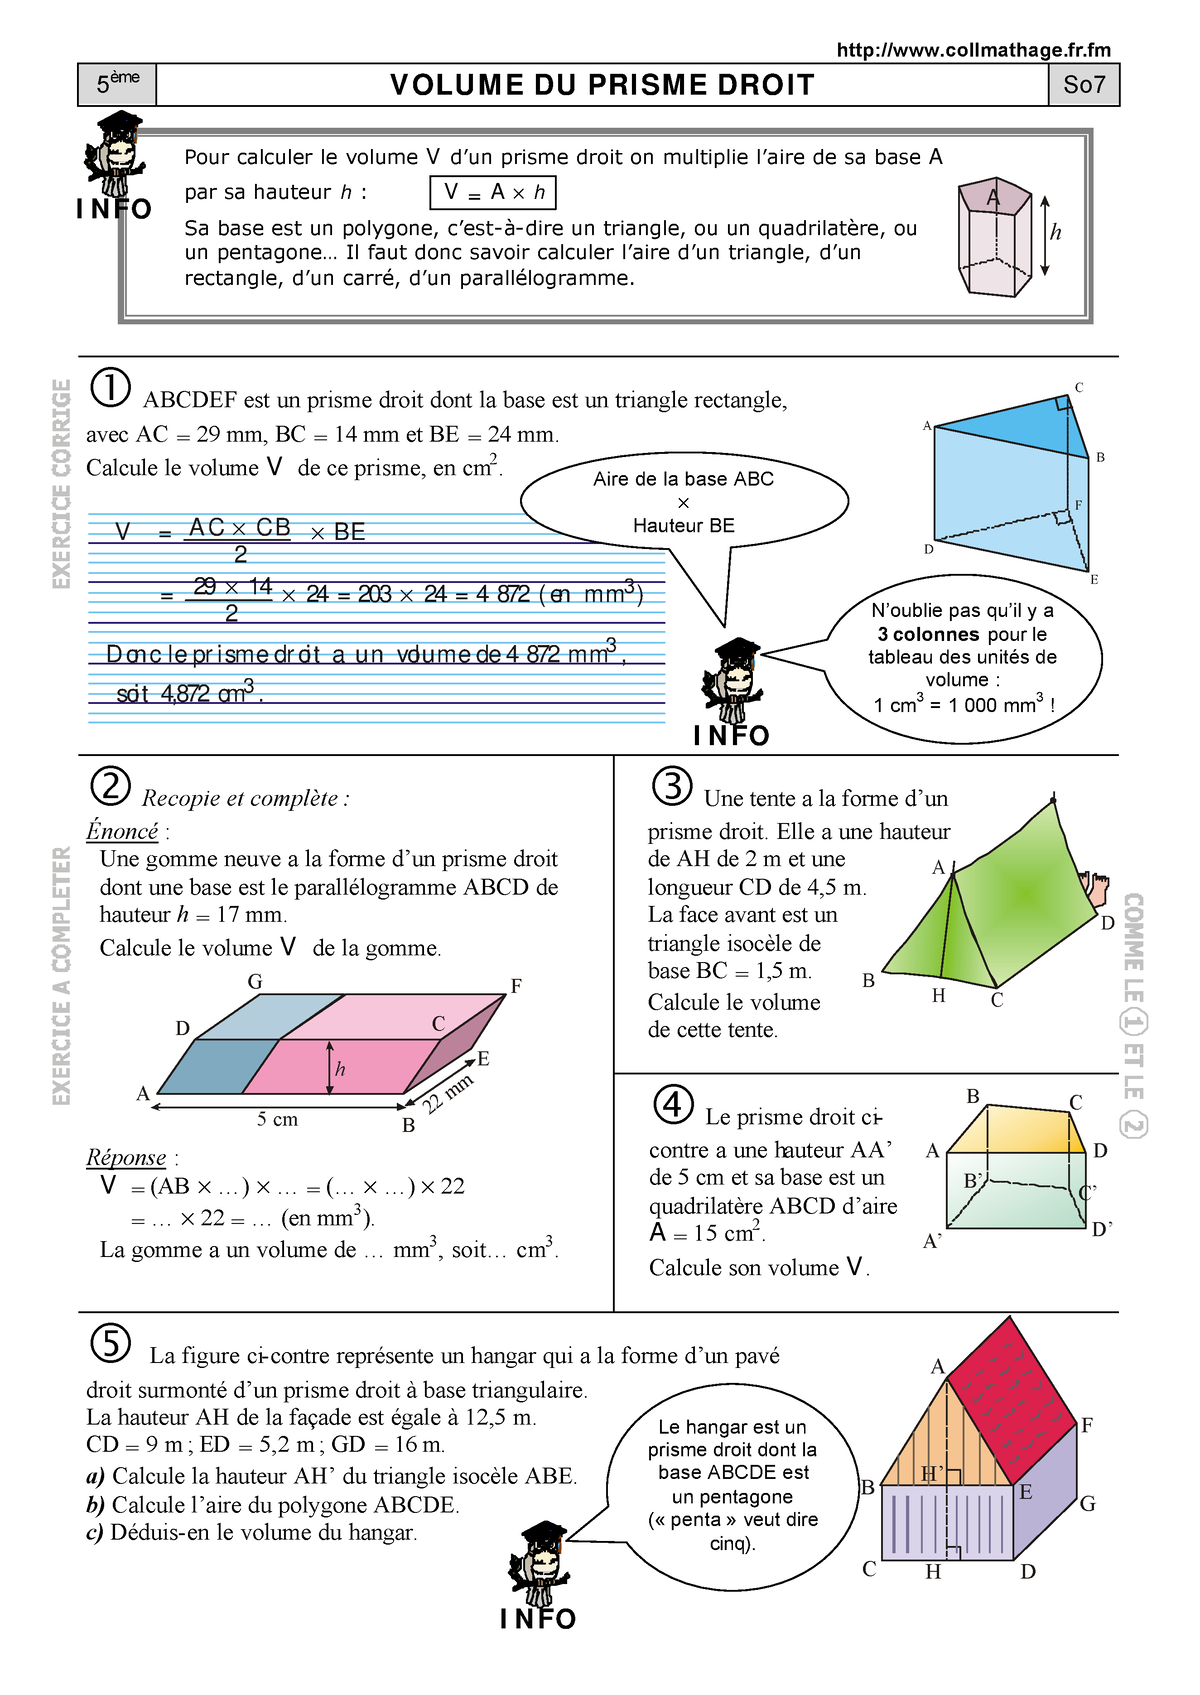 Le prisme - Cours maths 5ème - Tout savoir sur le prisme droit